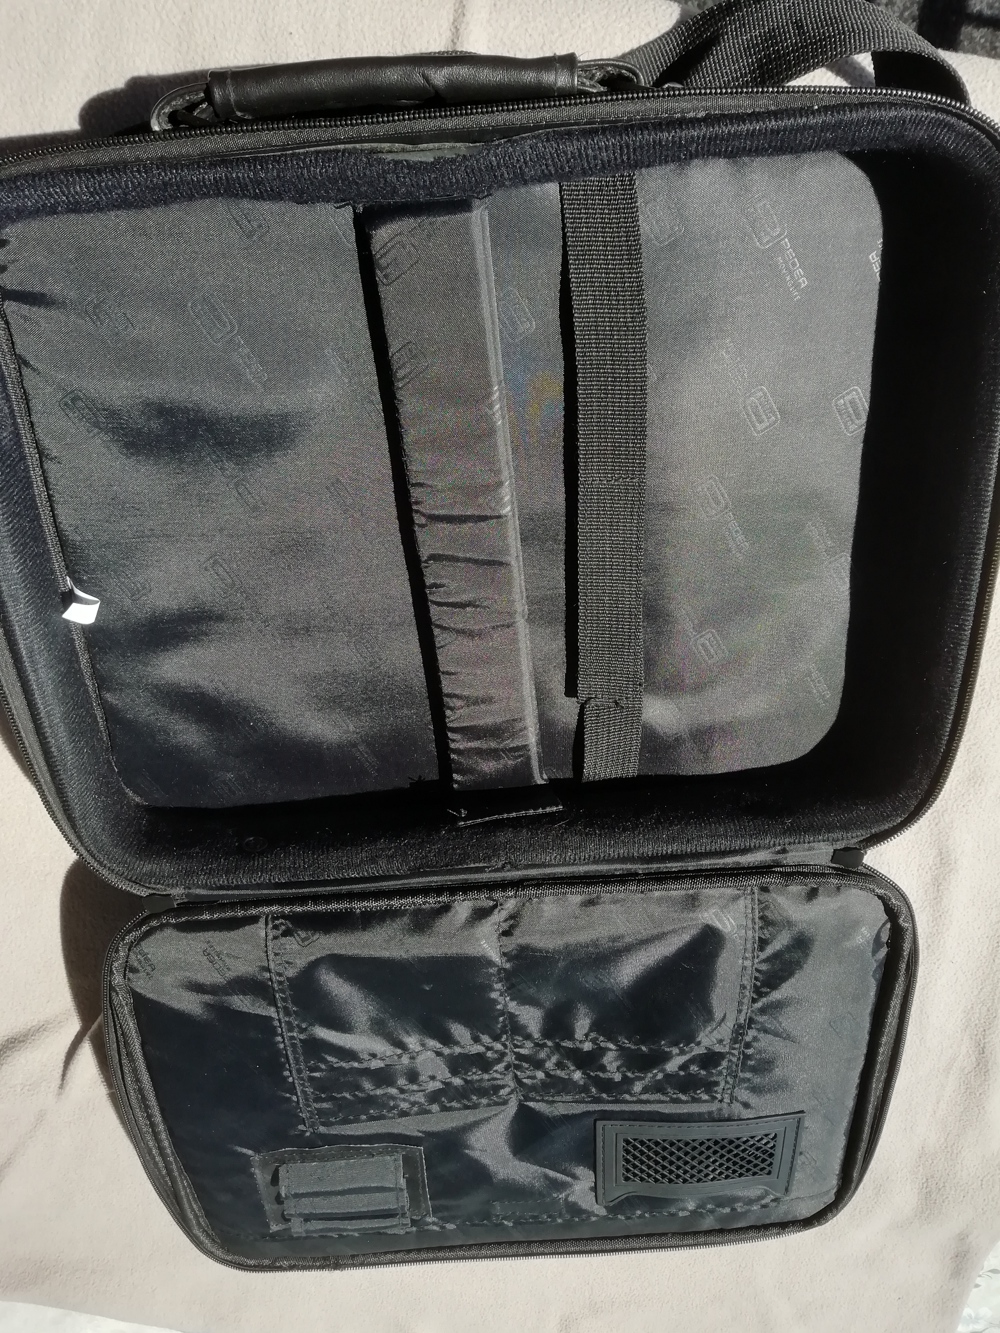 Verkaufe Laptoptasche von Pedea, Farbe: schwarz mit roter Designlinie